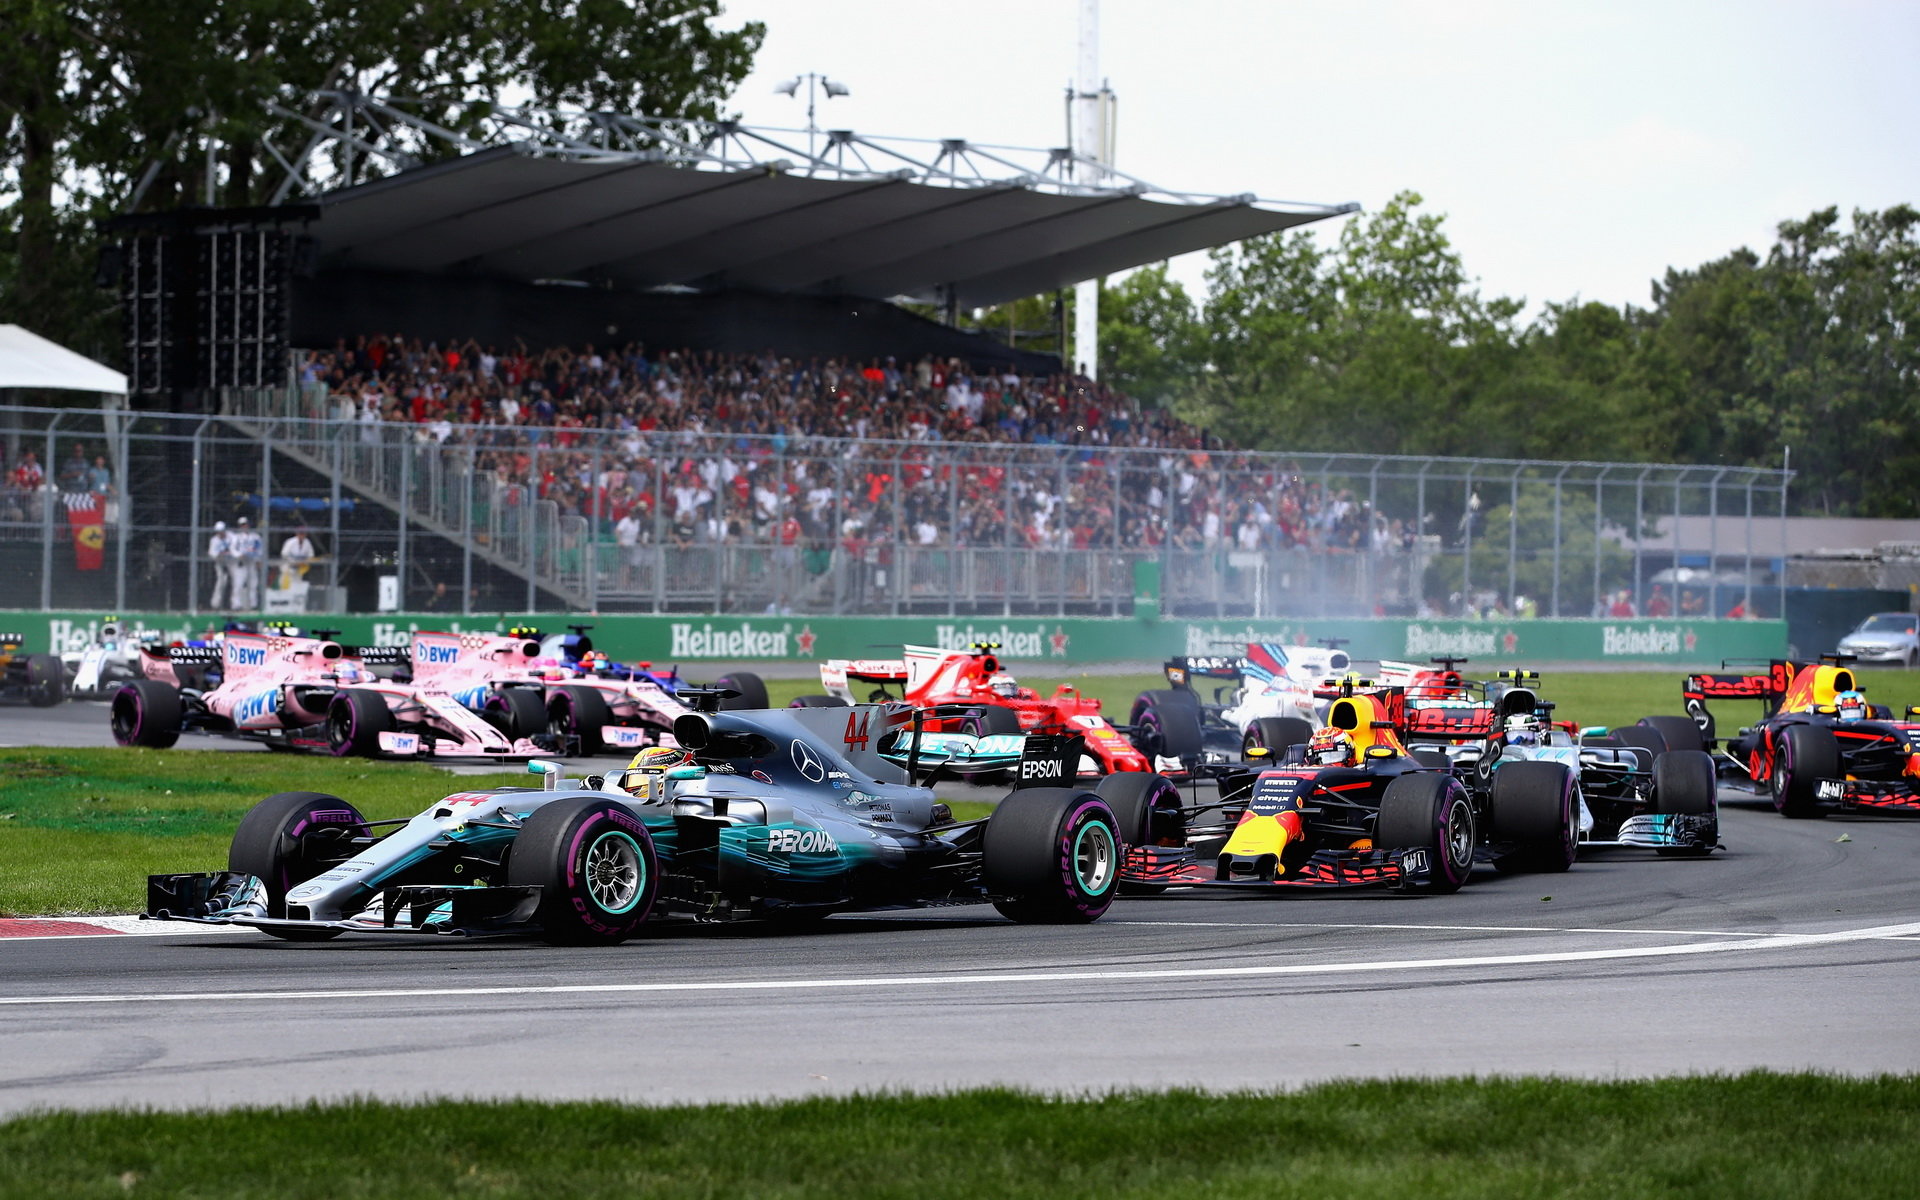 Lewis Hamilton těsně po startu závodu v Kanadě